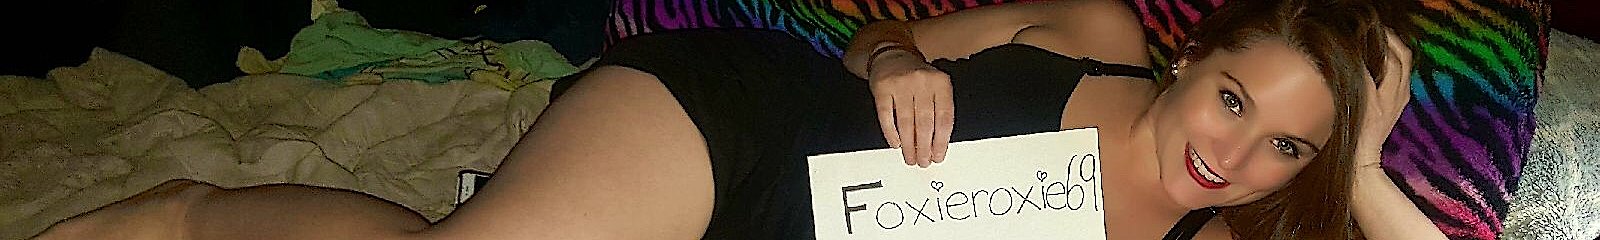 Foxie Roxie